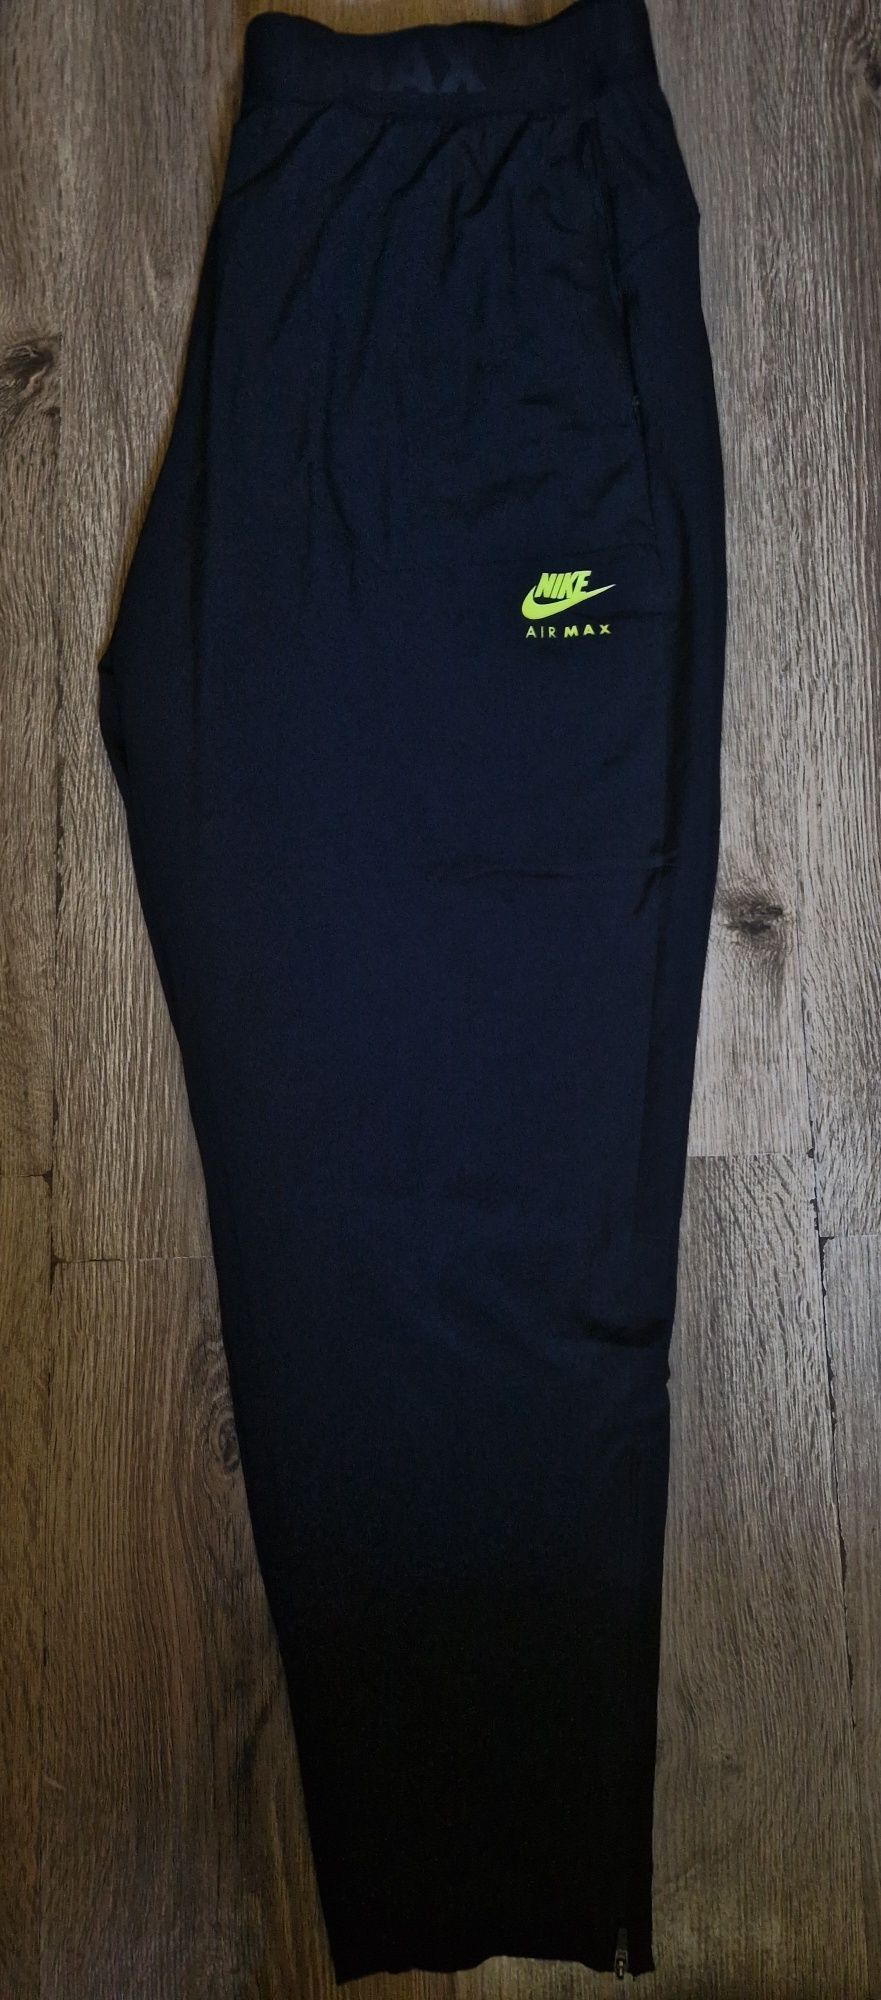 Spodnie Nike Air Max roz.XL stan nowe